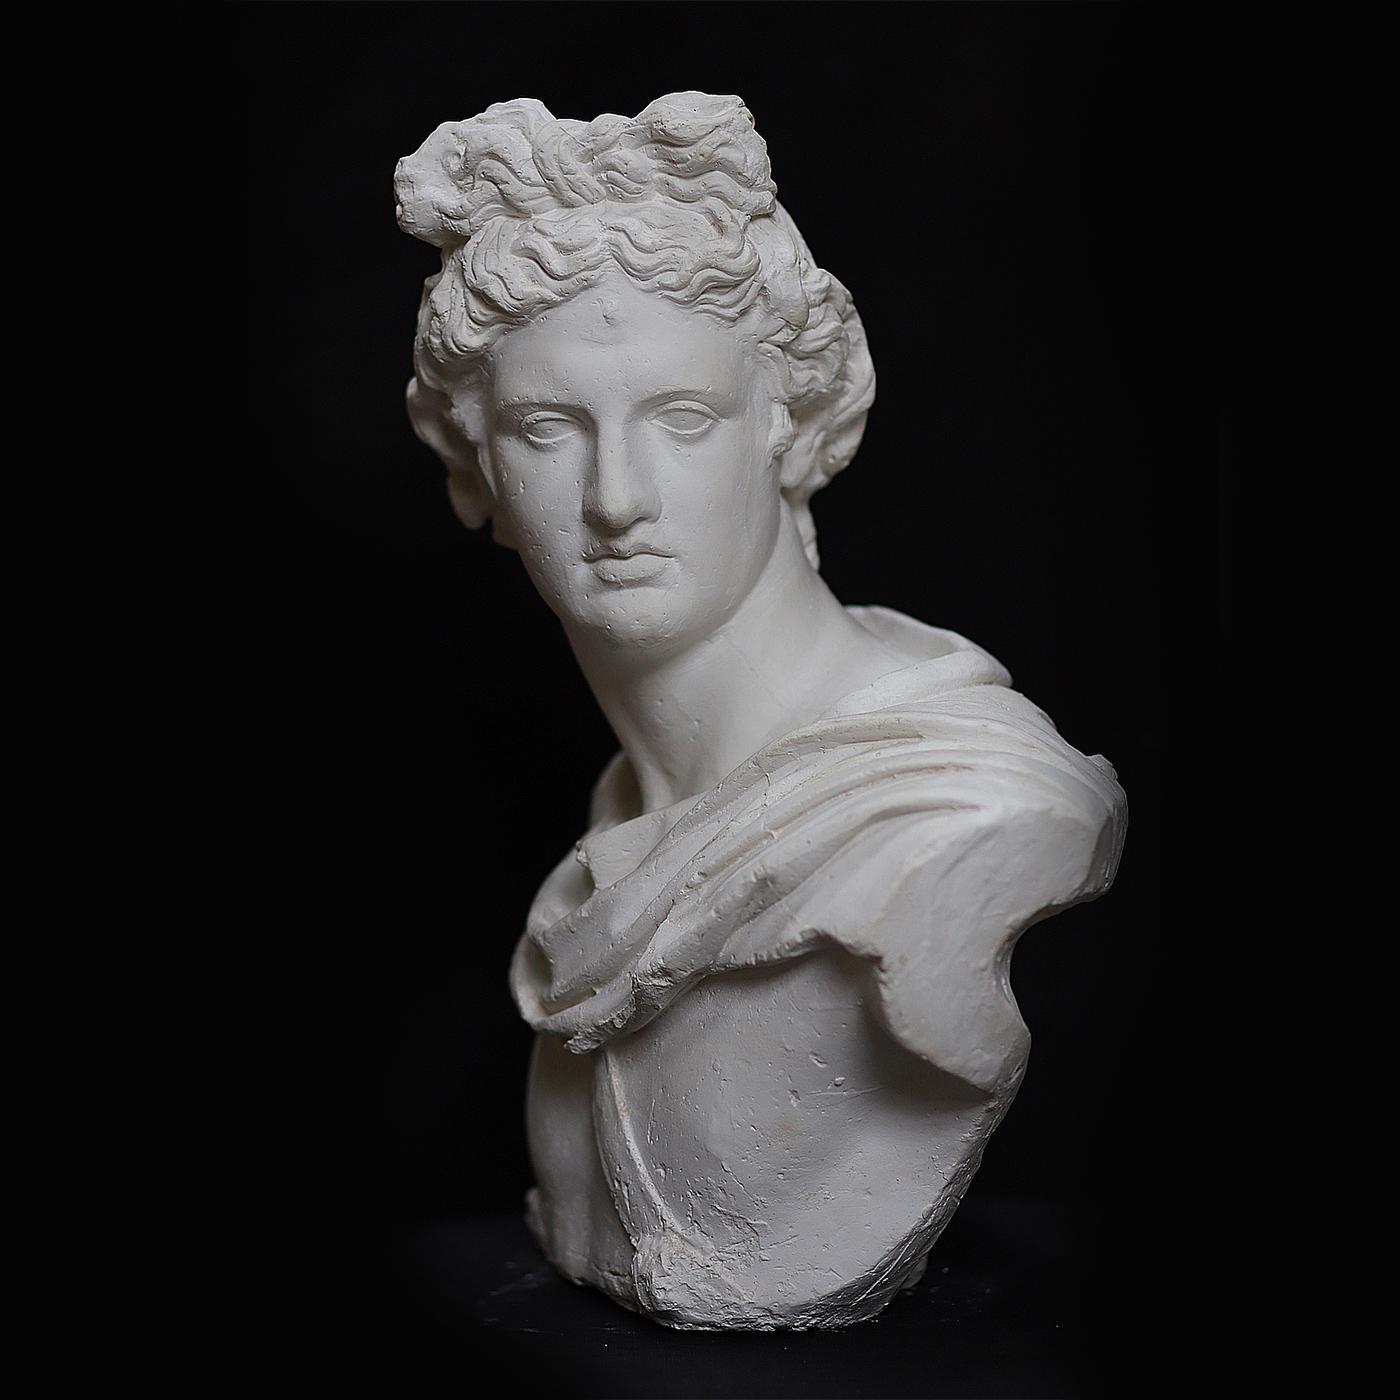 Diese prächtige Büste von Apollo, dem griechischen Gott der Kunst, Medizin und Musik, ist direkt von den klassischen Marmorstatuen der römischen Tradition inspiriert. Der überwältigende Gott erscheint hier im Profil, ein strenger Blick auf diesem